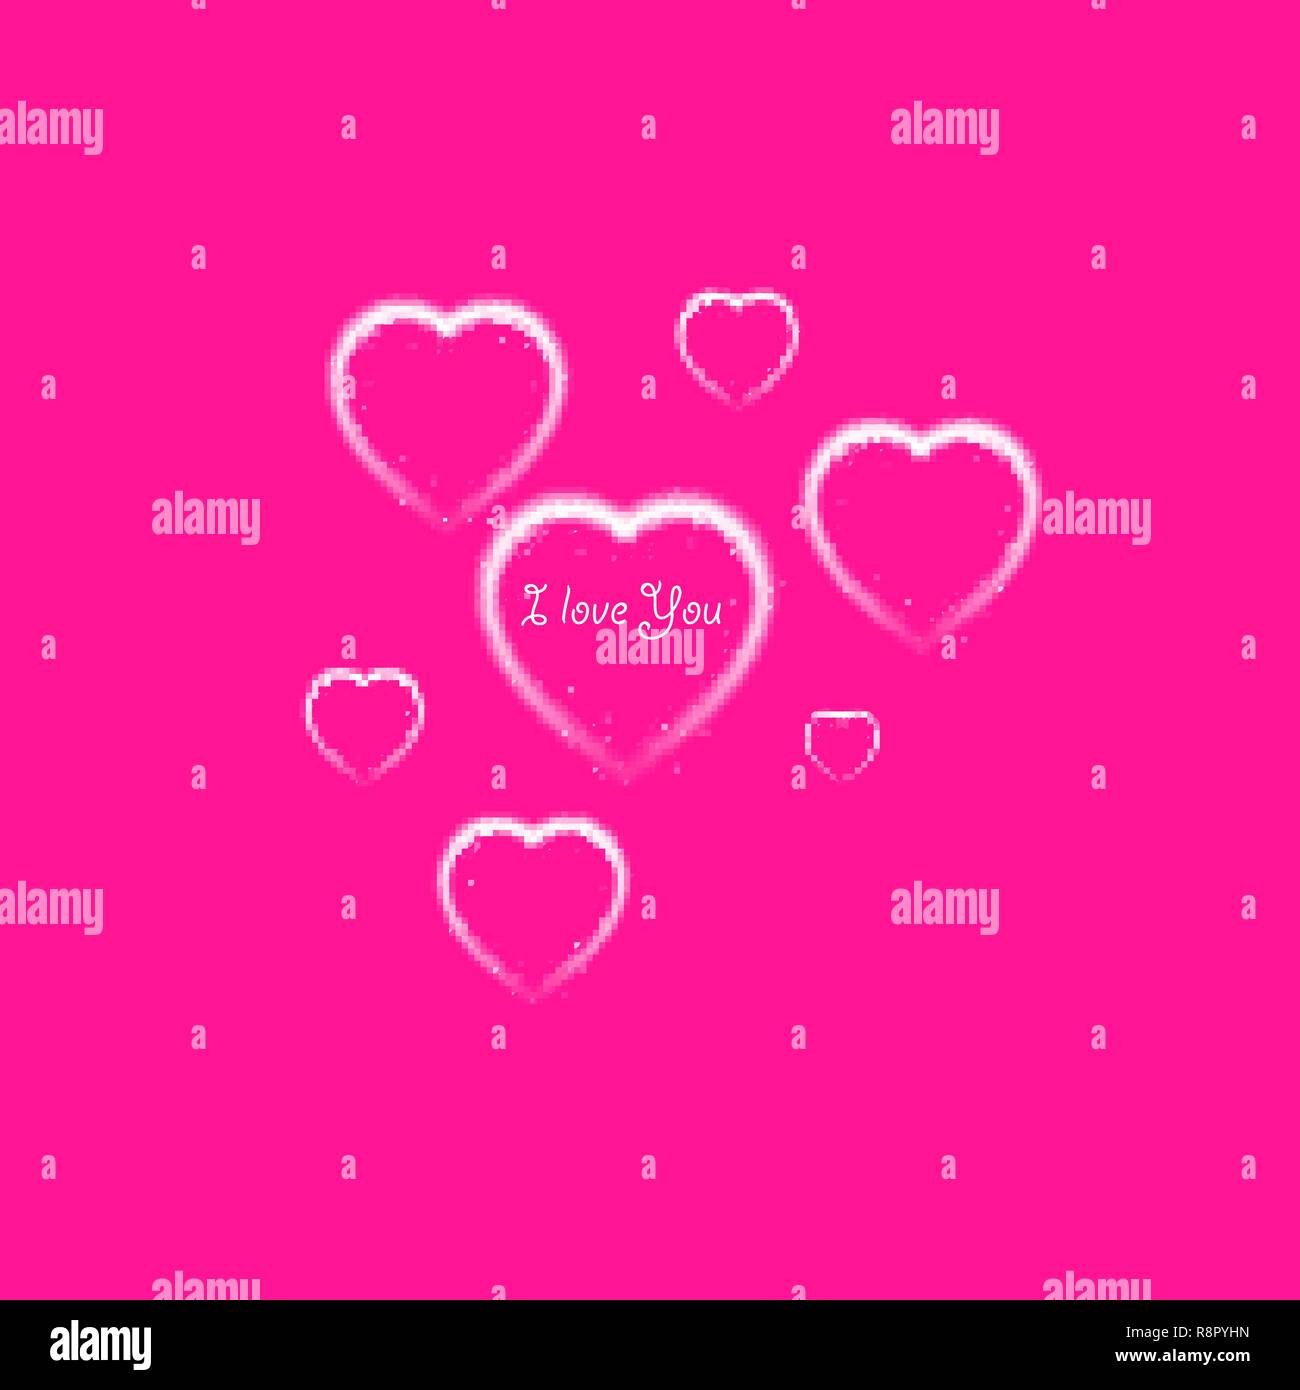 Happy Valentines Day greeting card. Io vi amo. 14 febbraio. Holiday sfondo con cuori e ti amo frase., luce, stelle sulla plastica rosa backgraund. Illustrazione Vettoriale Illustrazione Vettoriale